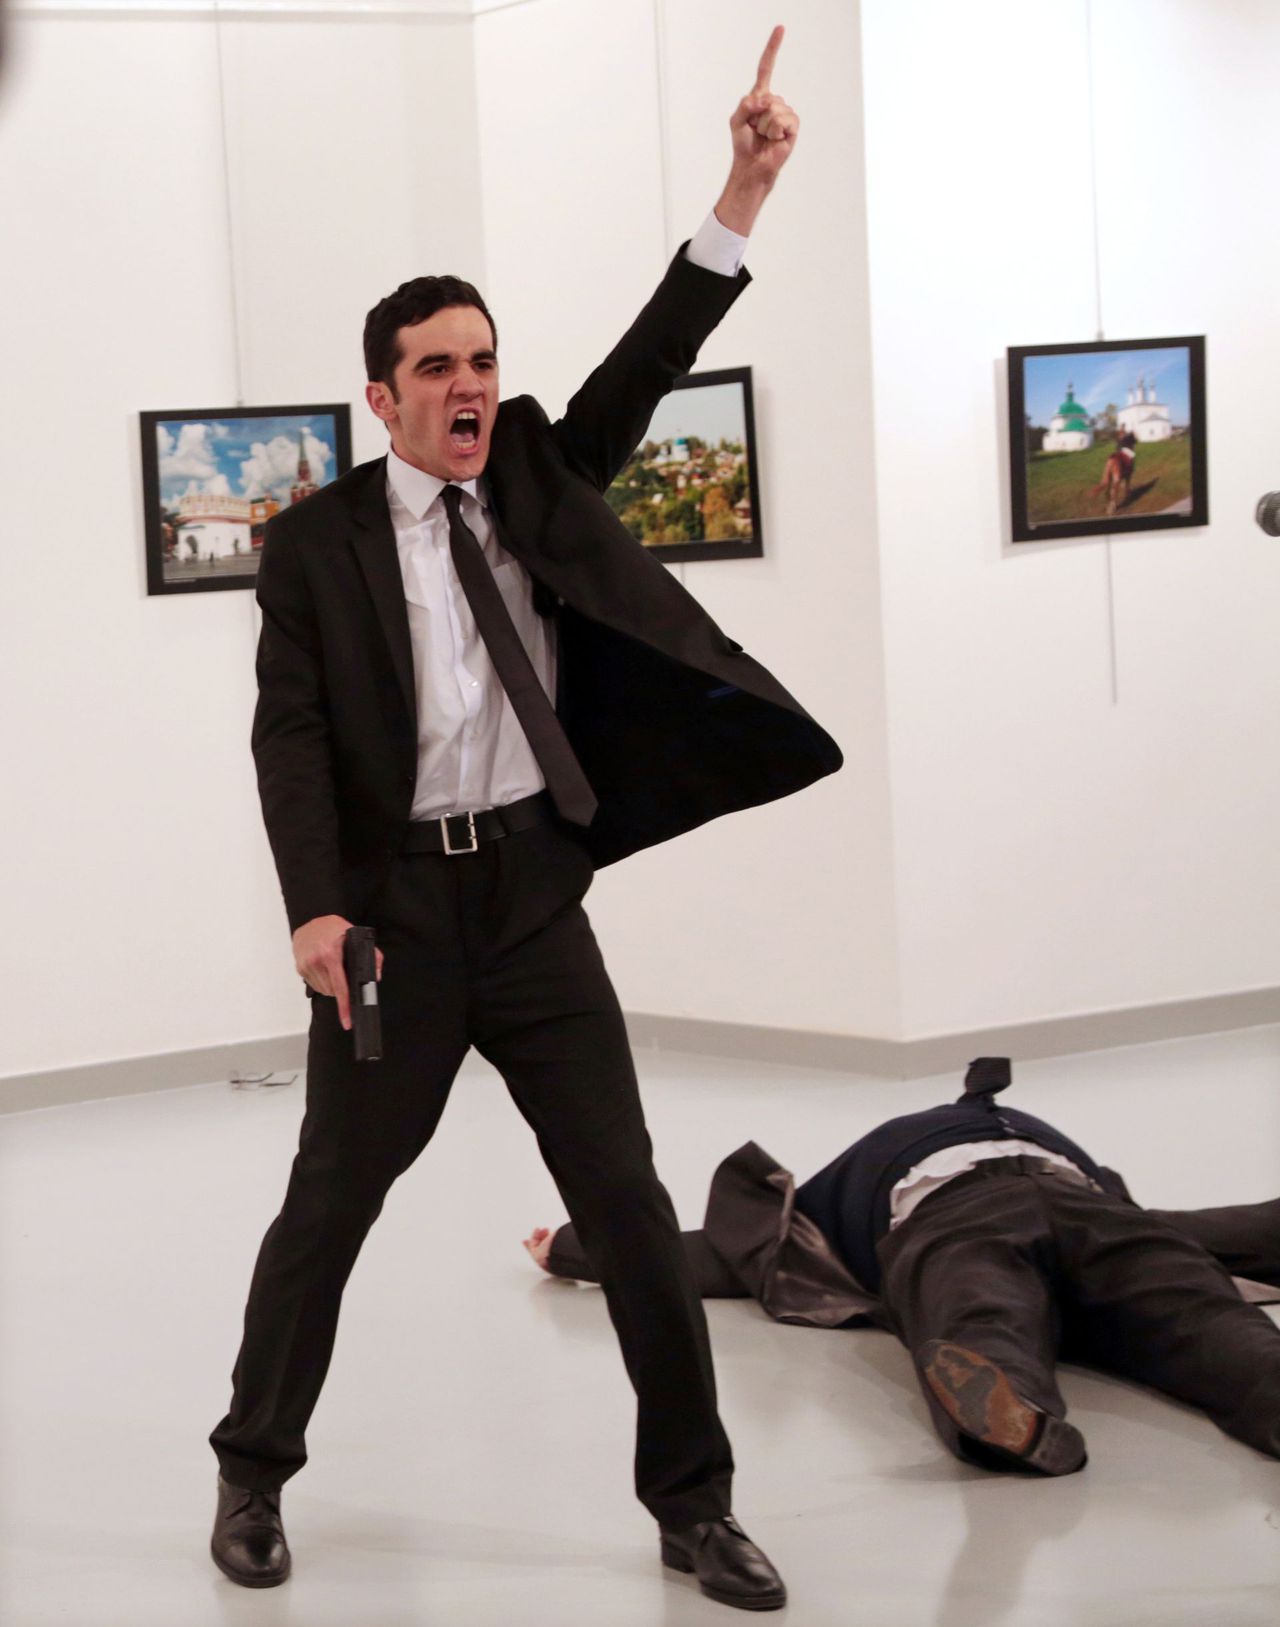 De Turkse fotograaf Burhan Ozbilici, al dertig jaar werkzaam voor persbureau AP, won de prijs voor zijn foto van de moord op de Russische ambassadeur Andrej Karlov die tijdens een tentoonstelling in Ankara op 19 december werd neergeschoten door de 22-jarige Mevlüt Mert Altintas.